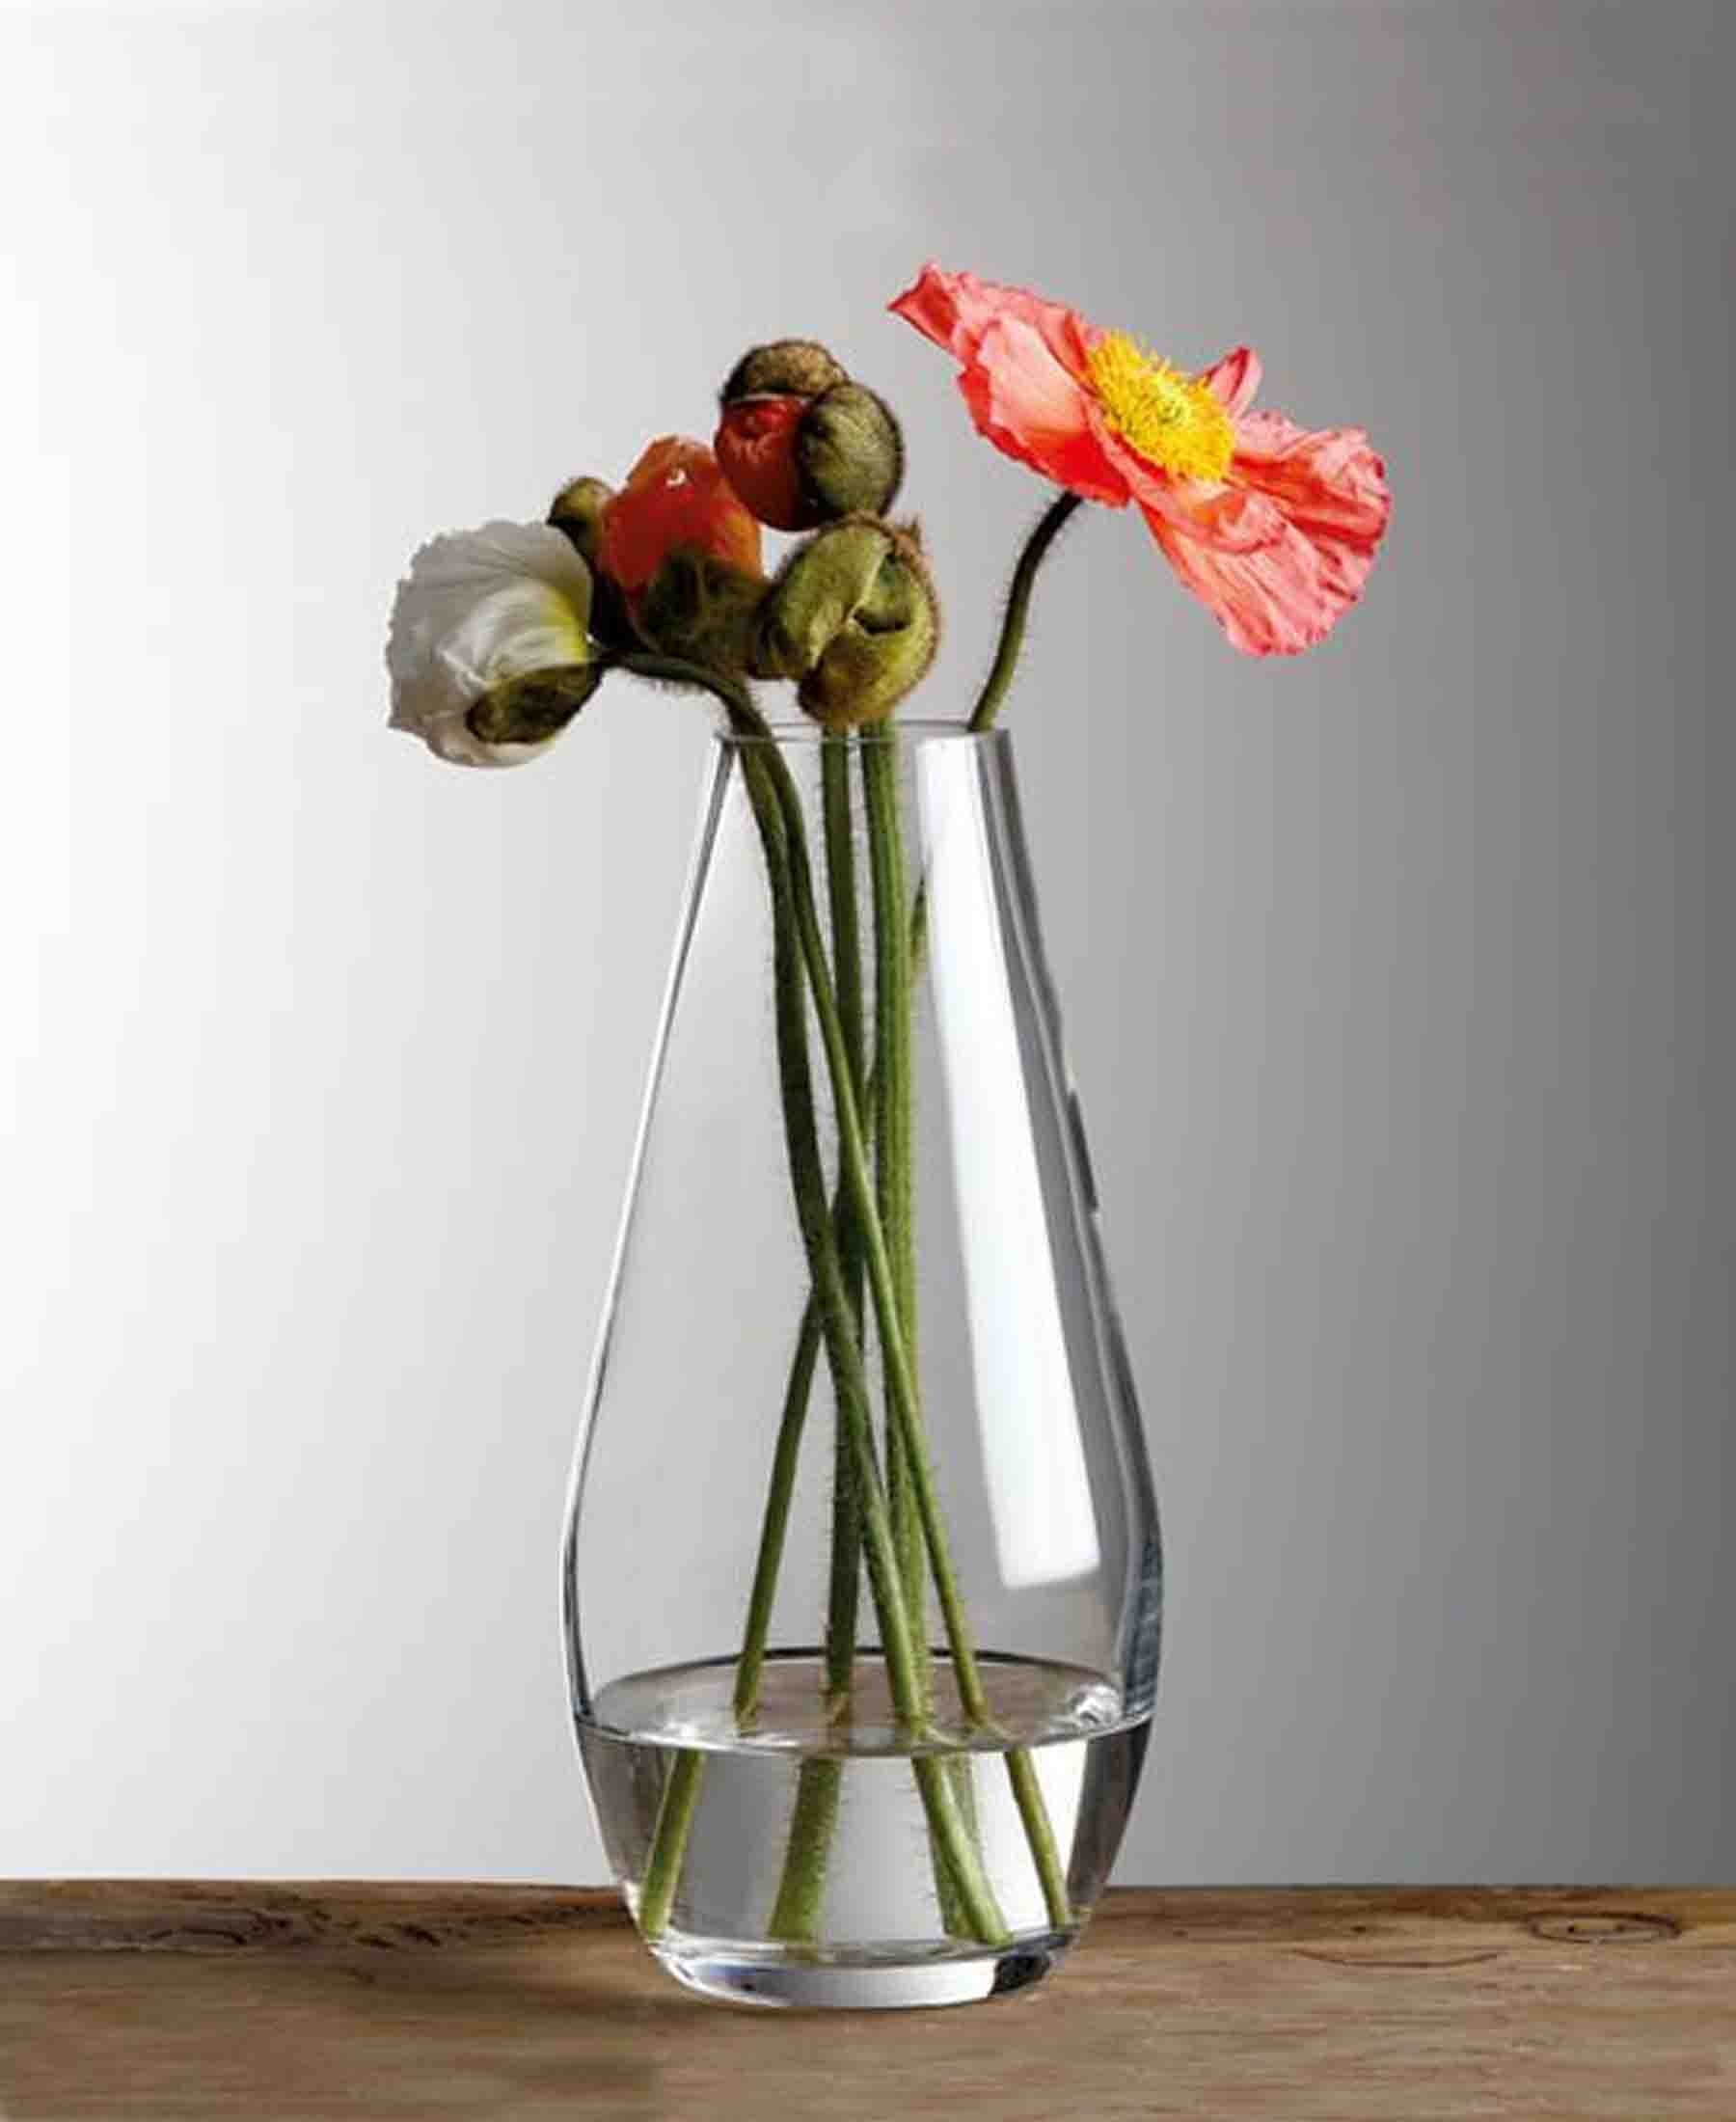 Diamante Teardrop Vase 30cm - Clear